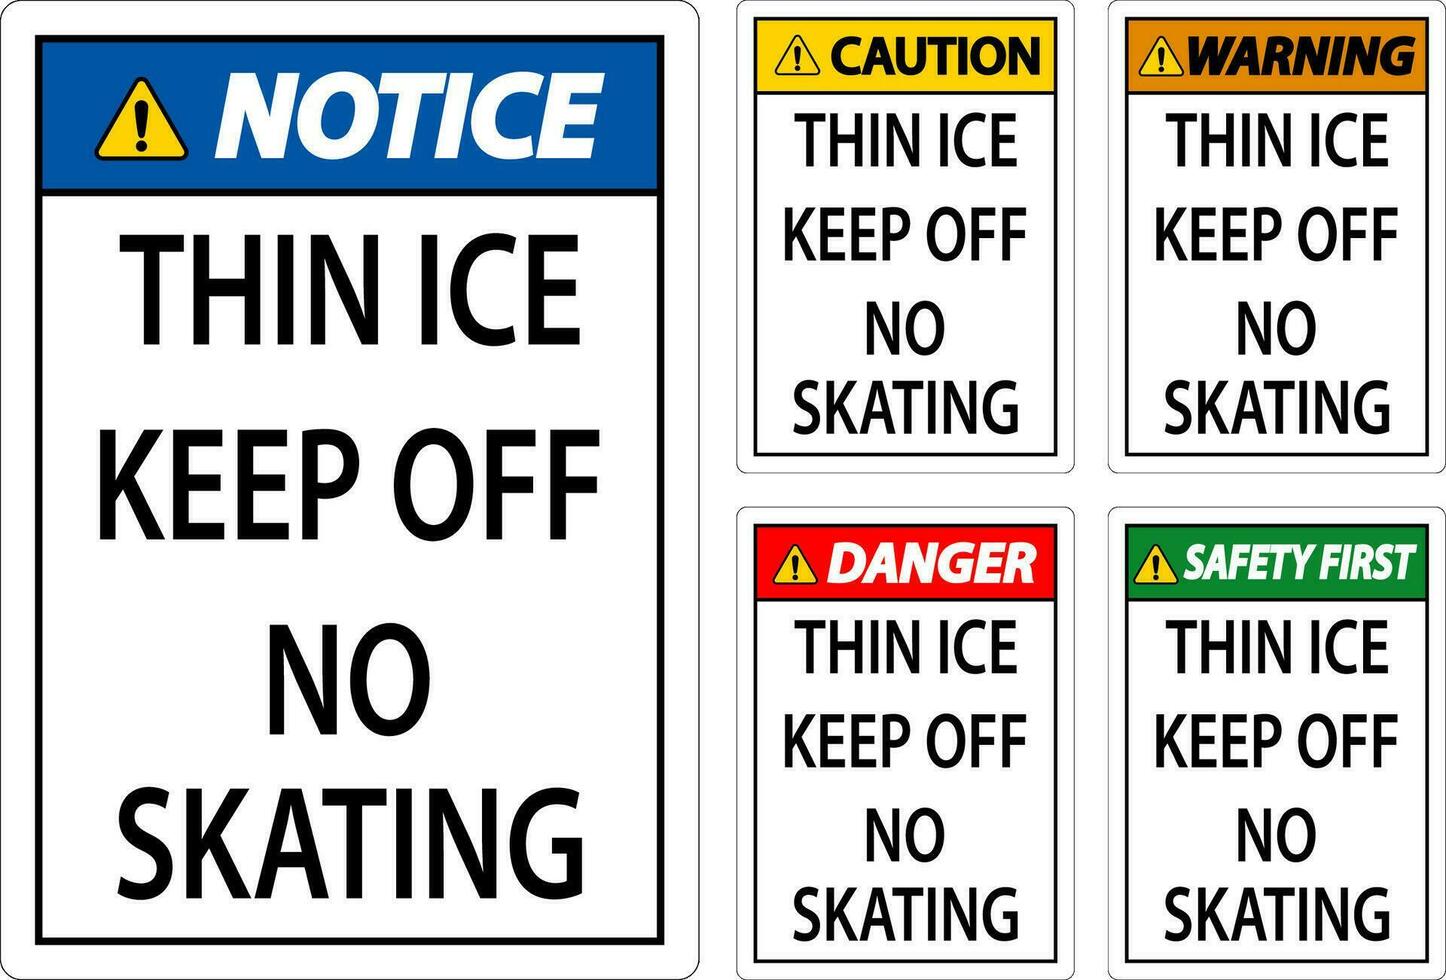 mince la glace signe avertissement - mince la glace garder de non patinage vecteur